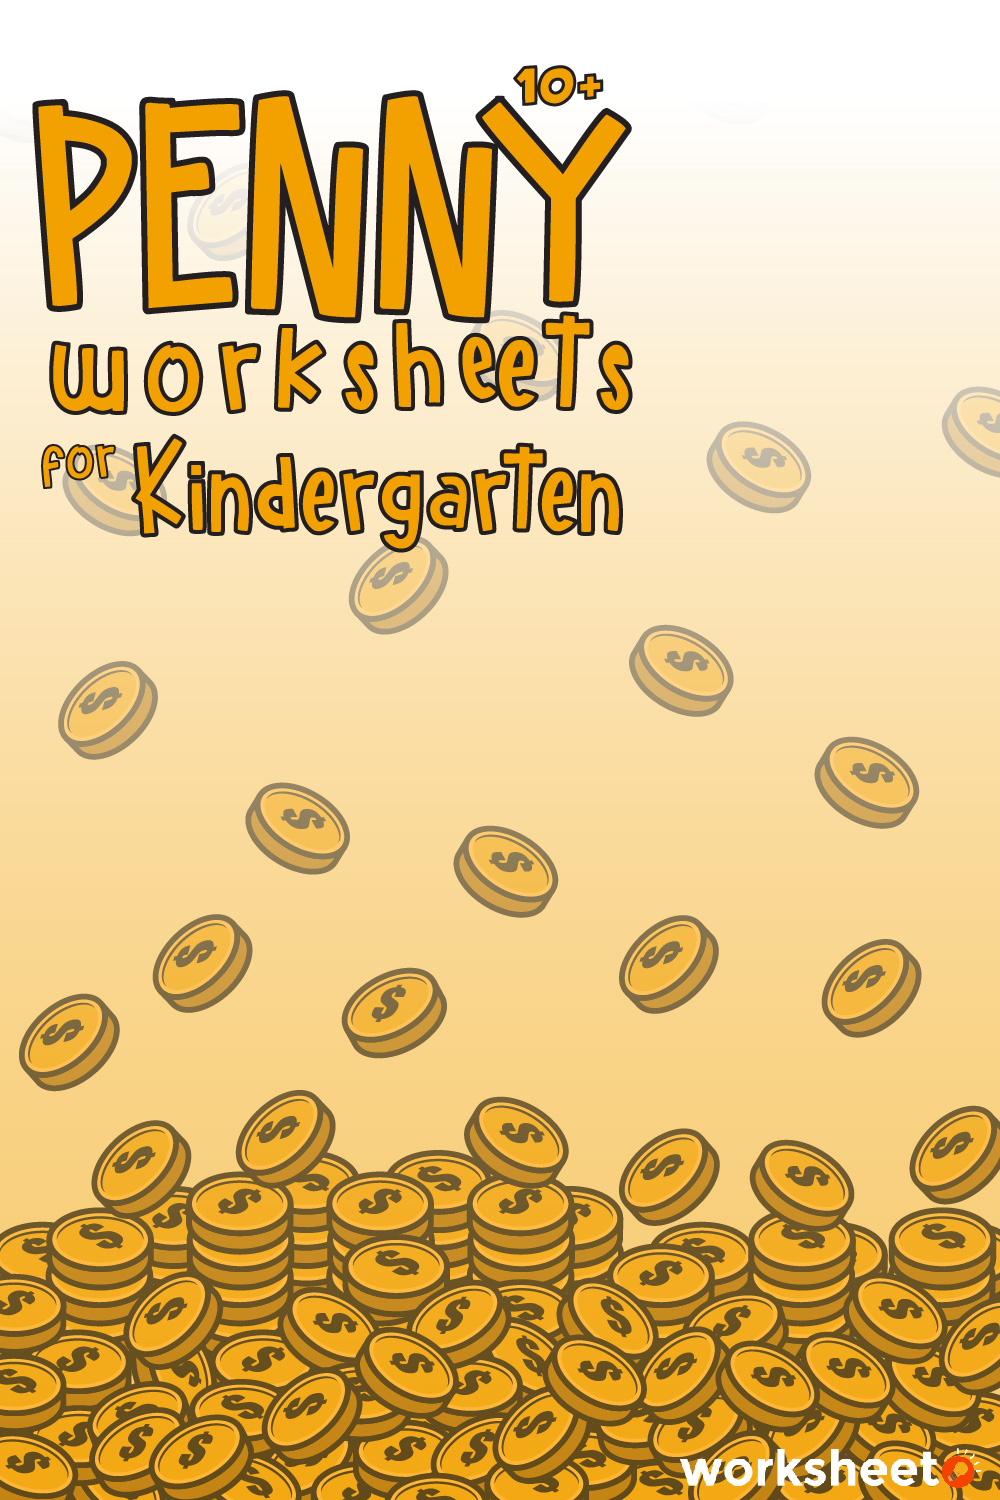 14 Images of Penny Worksheets For Kindergarten